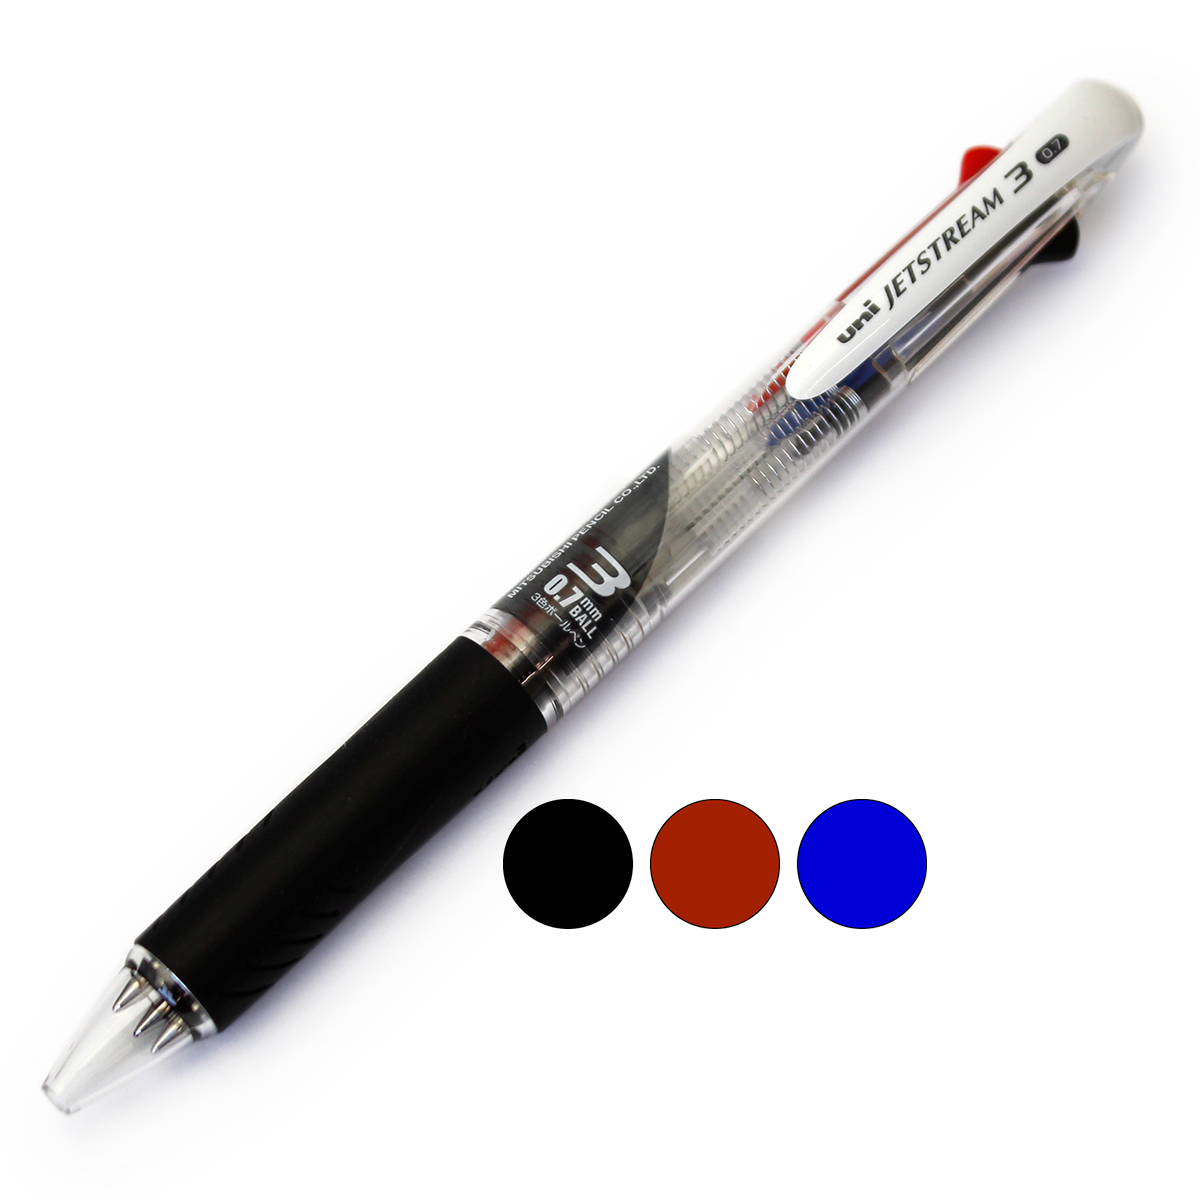 三菱鉛筆 ジェットストリーム 3色ボールペン 0.7mm 透明 T SXE3-400-07 JETSTREAM なめらかな書き味 滑るような書き味 くっきりと濃い描線 書き分け便利な3色セット 速乾性 油性顔料